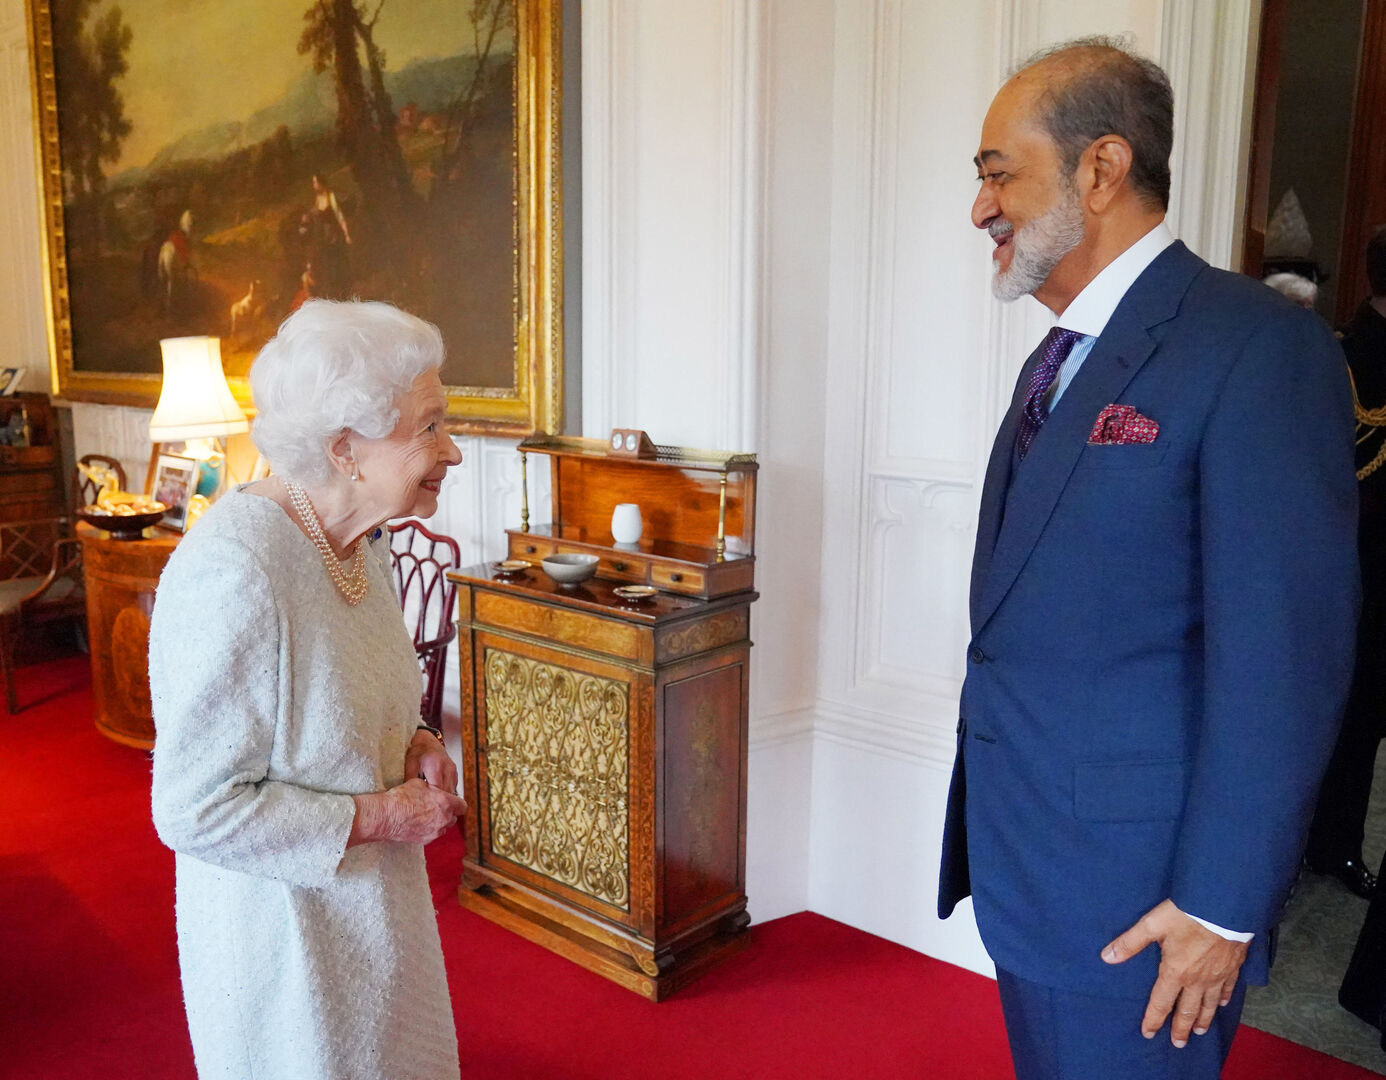 سلطان عمان يلتقي الملكة إليزابيث